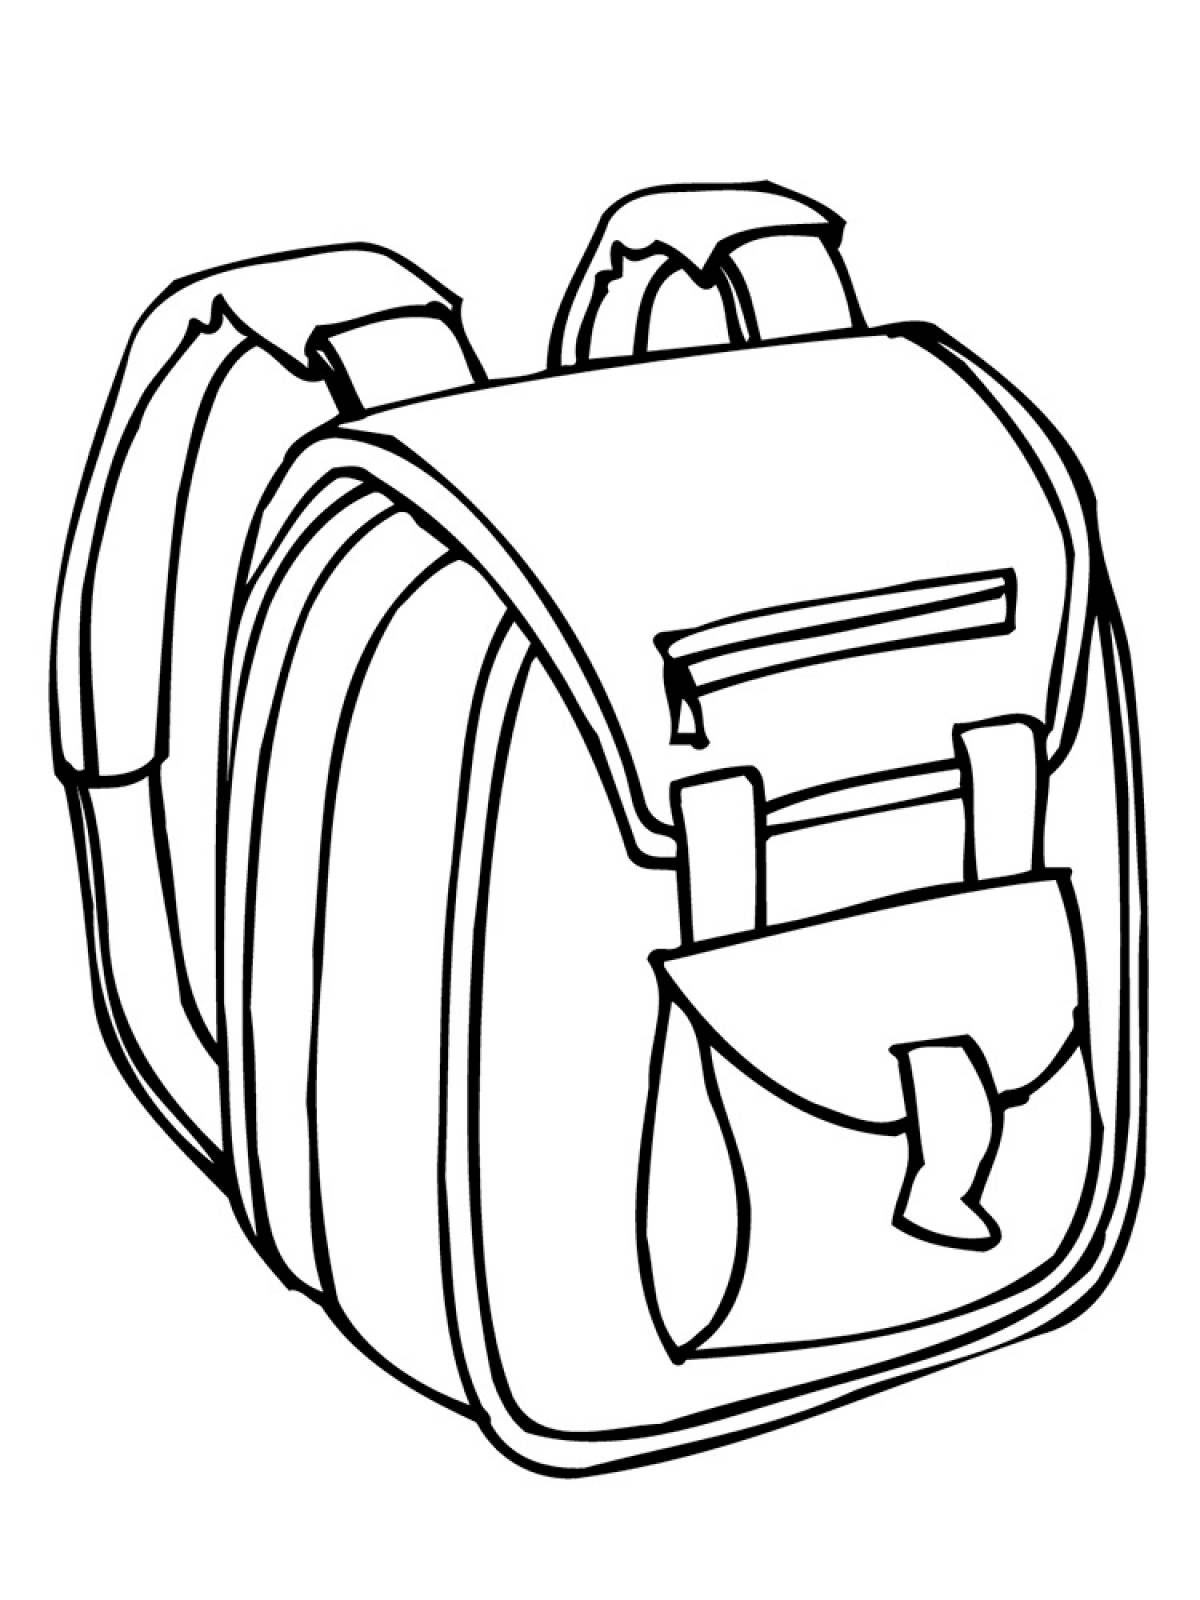 Backpack with shoulder straps